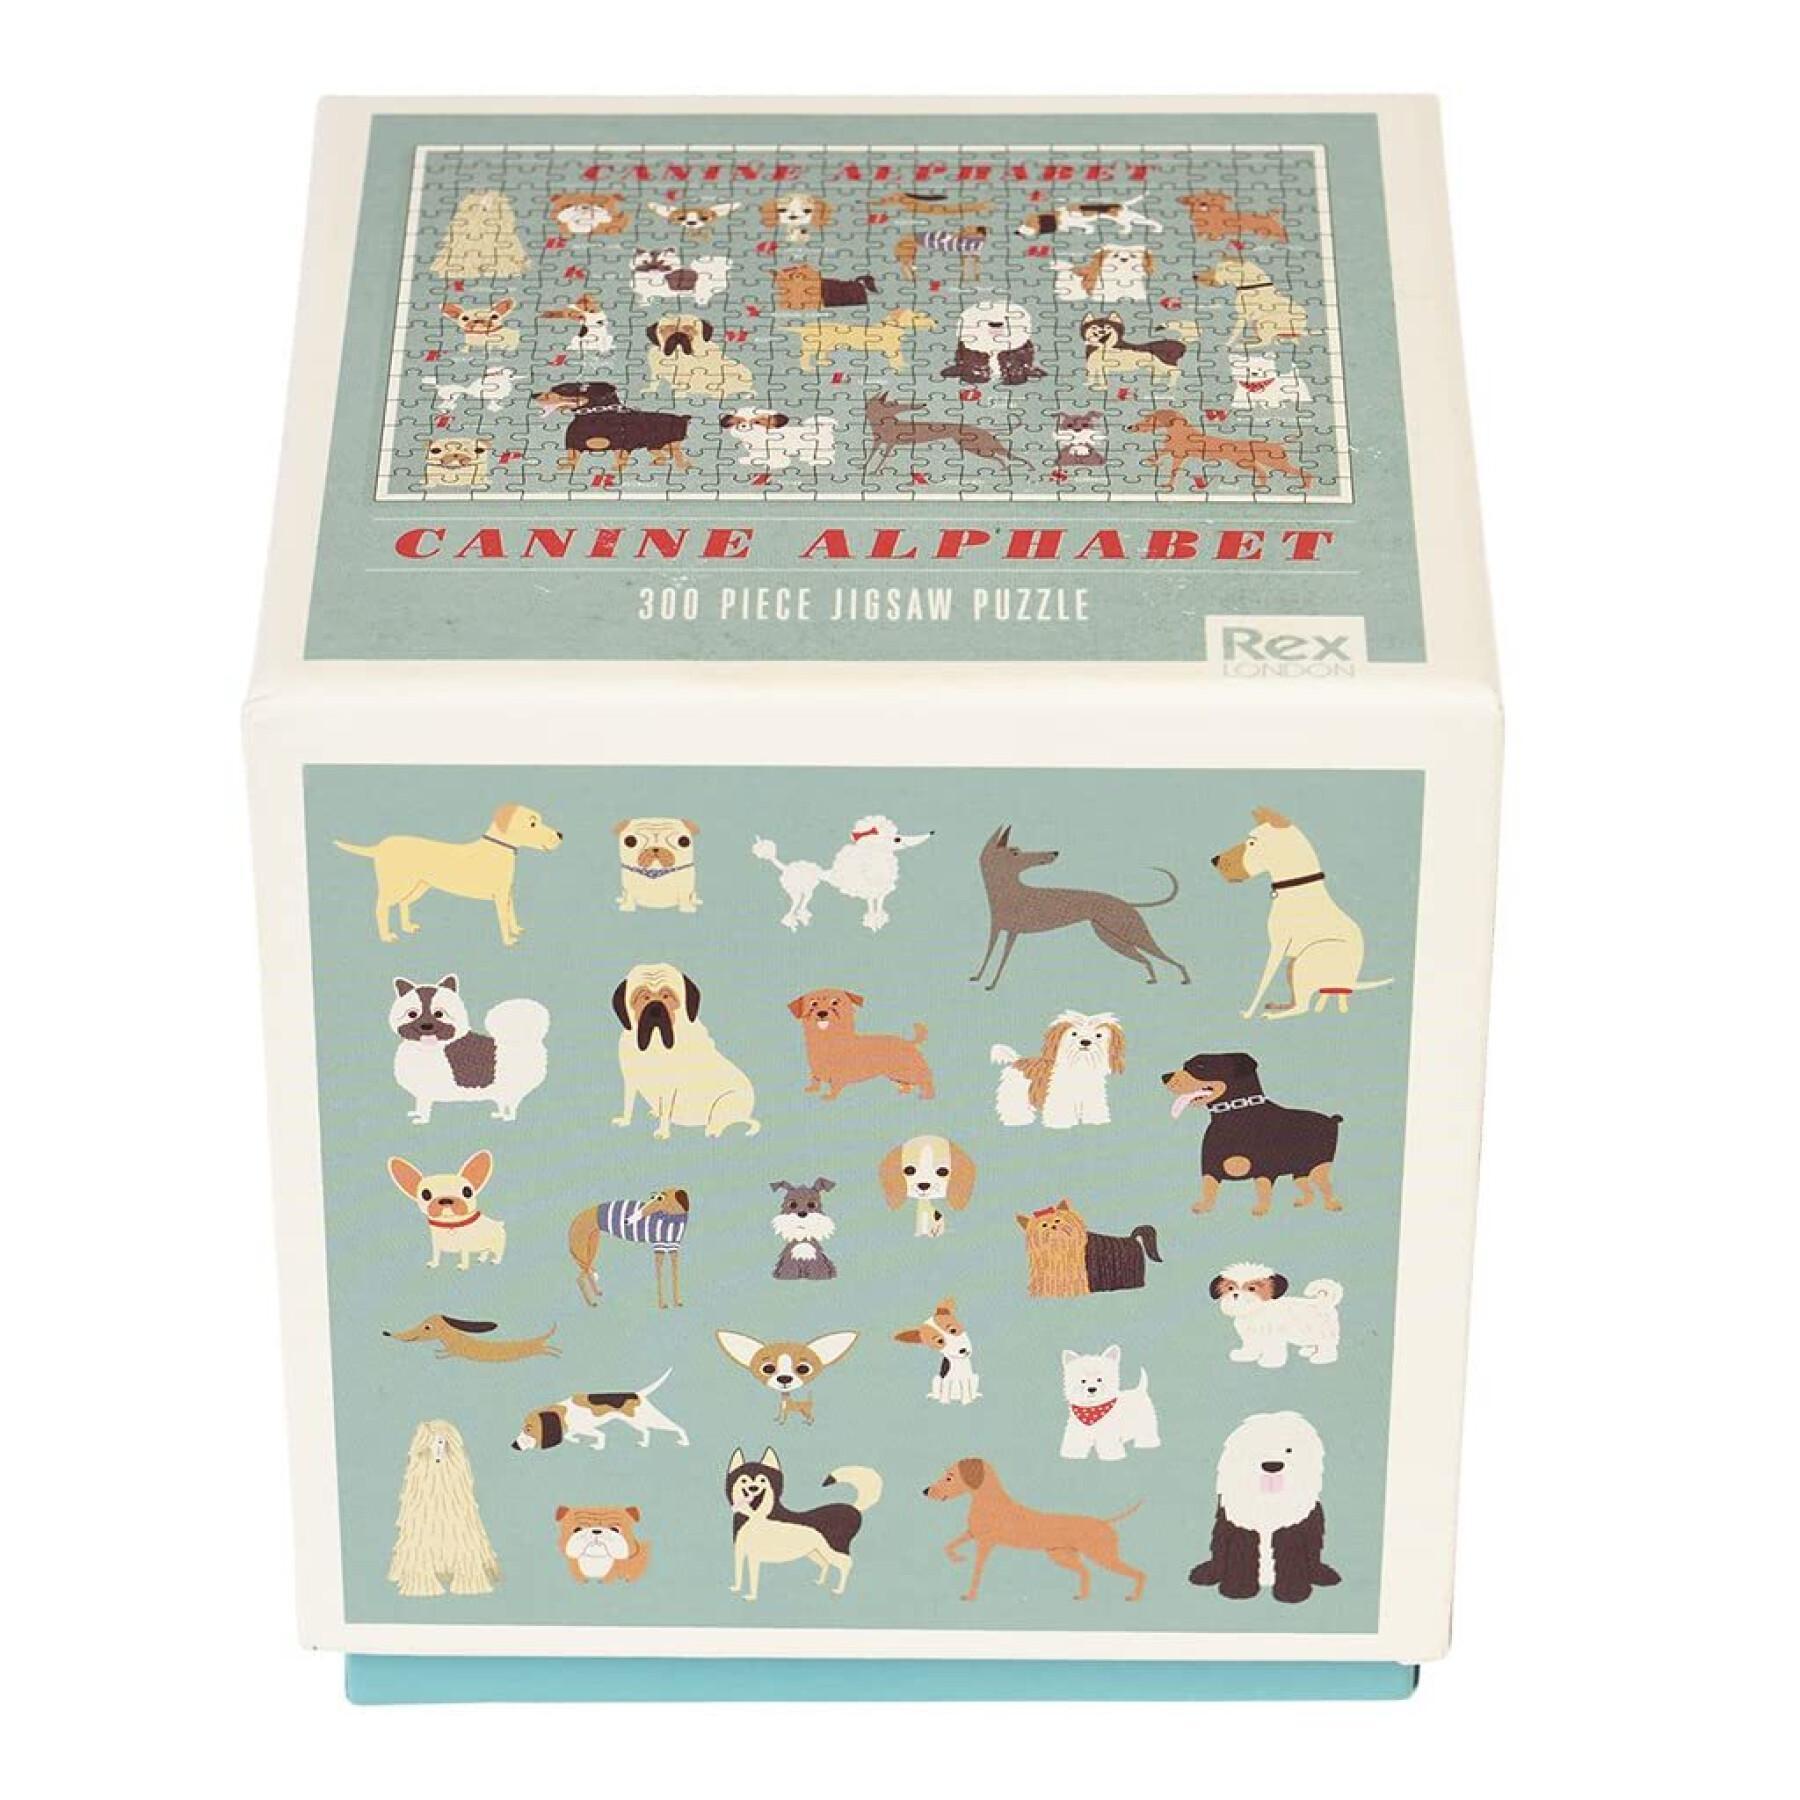 Puzzle 300 pieces canine alphabet Rex London Best In Show